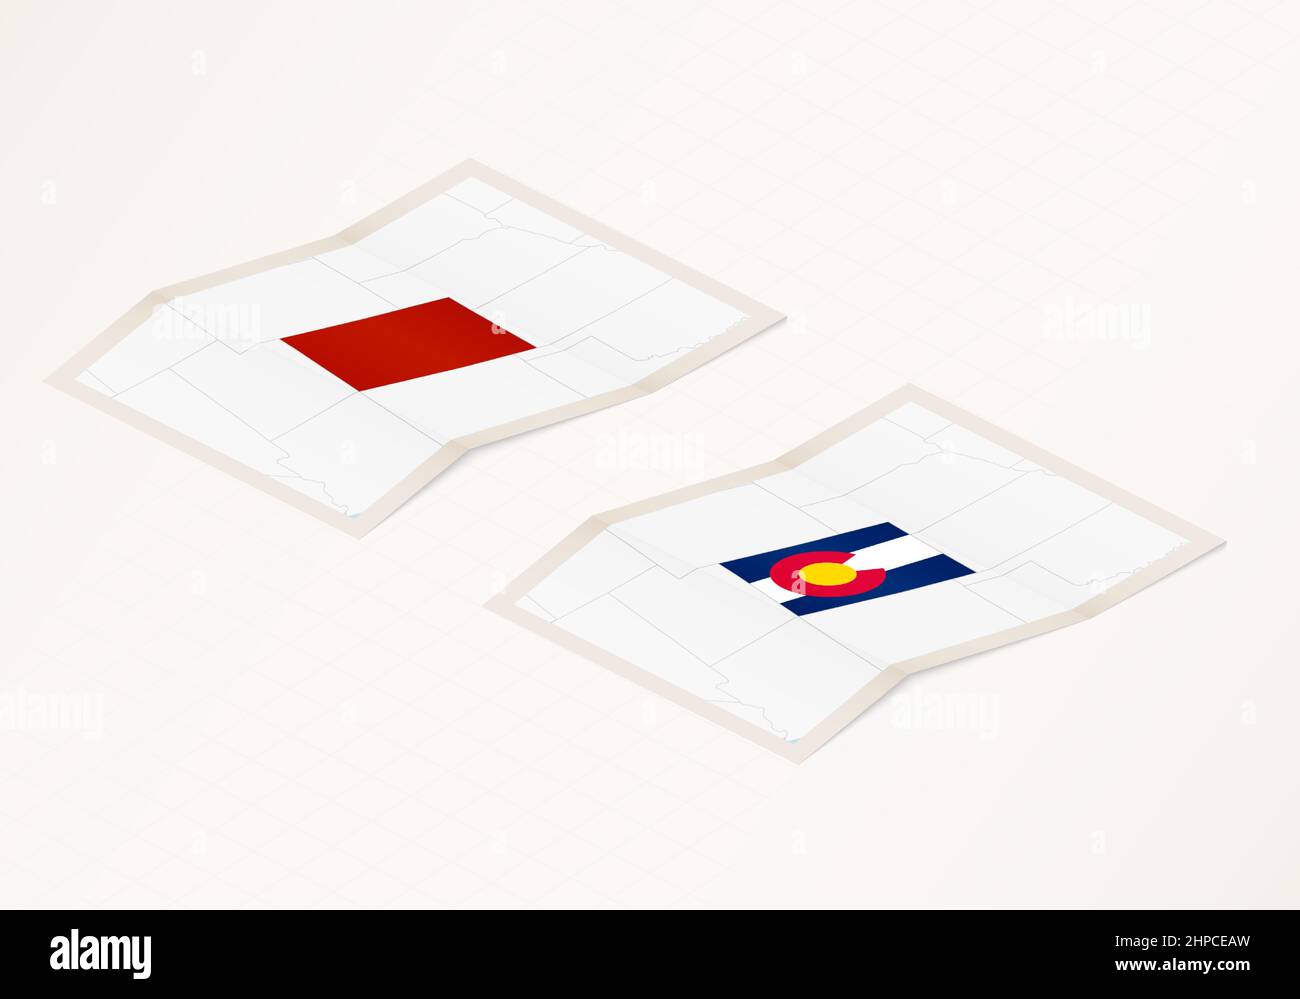 Zwei Versionen einer gefalteten Karte von Colorado mit der Flagge des Landes Colorado und mit der roten Farbe hervorgehoben. Satz isometrischer Vektorkarten. Stock Vektor